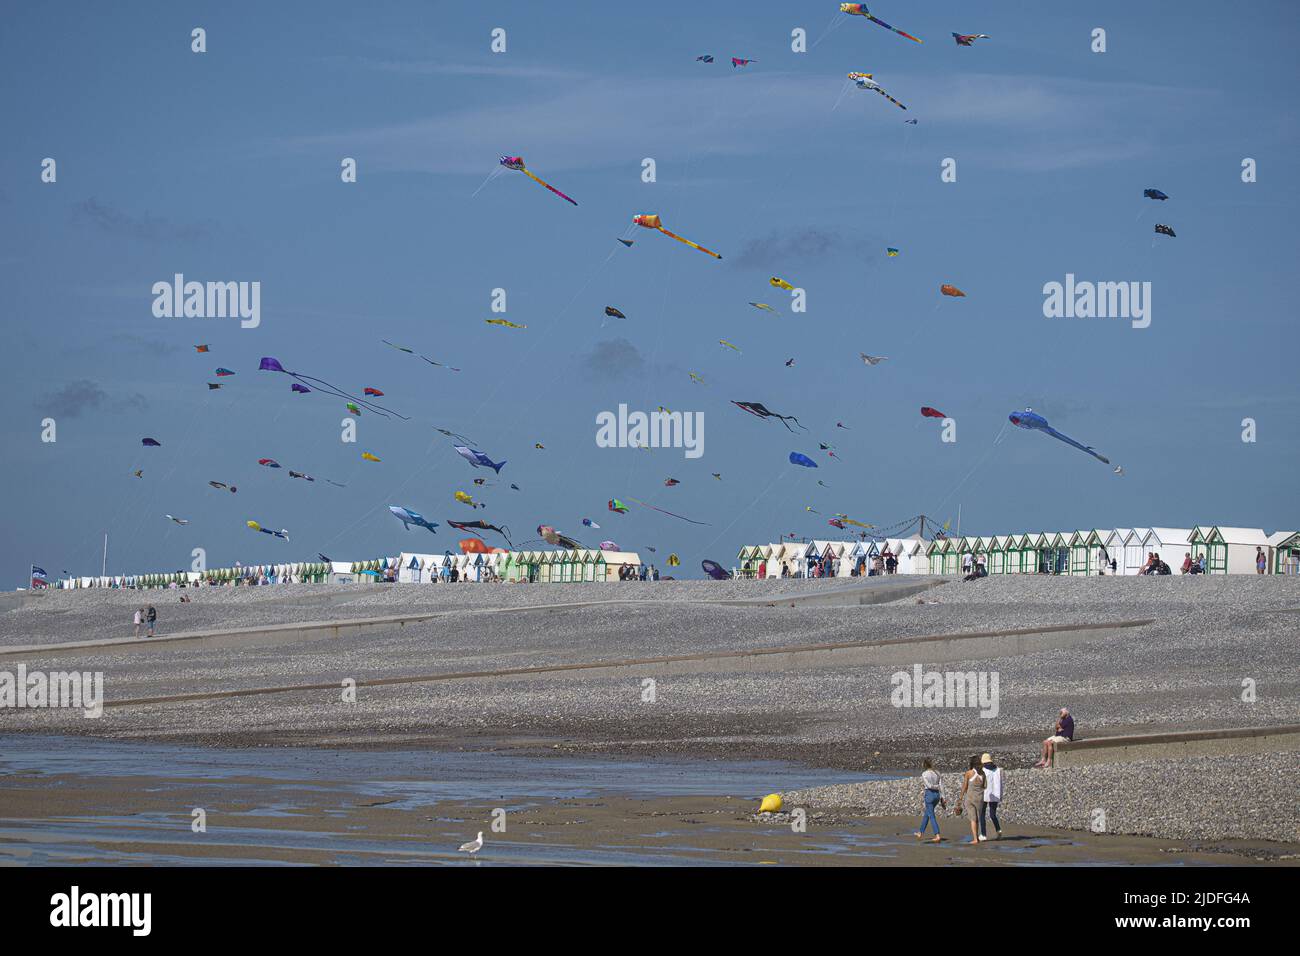 Cerf volants et festival à Cayeux sur mer, les cabines au bord de l'eau Foto Stock